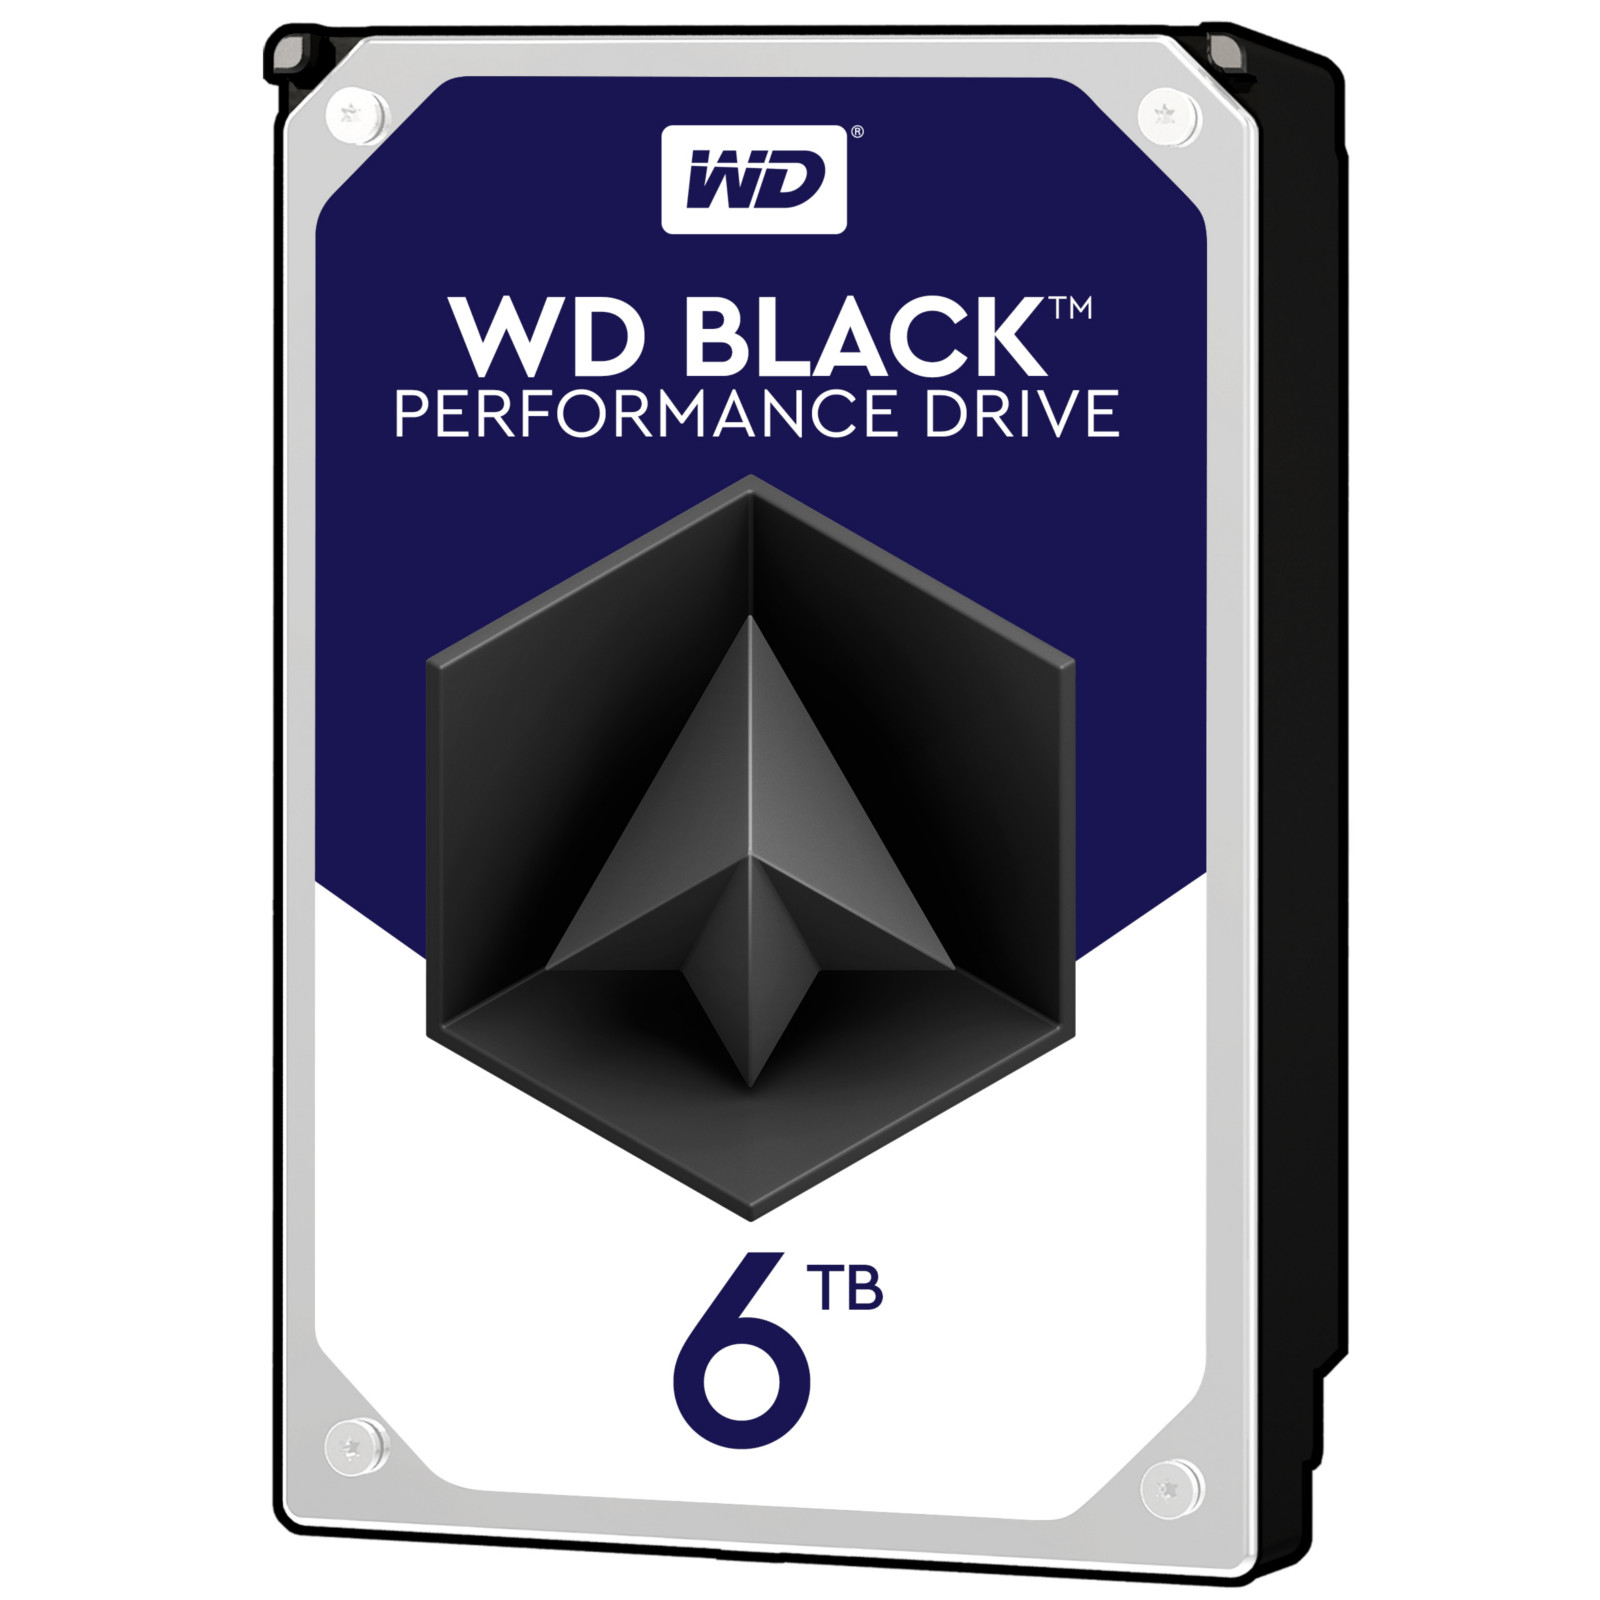 WD - B Grade WD 6TB Black HDD 7200RPM 256MB Cache Internal Performance Hard Drive (WD600